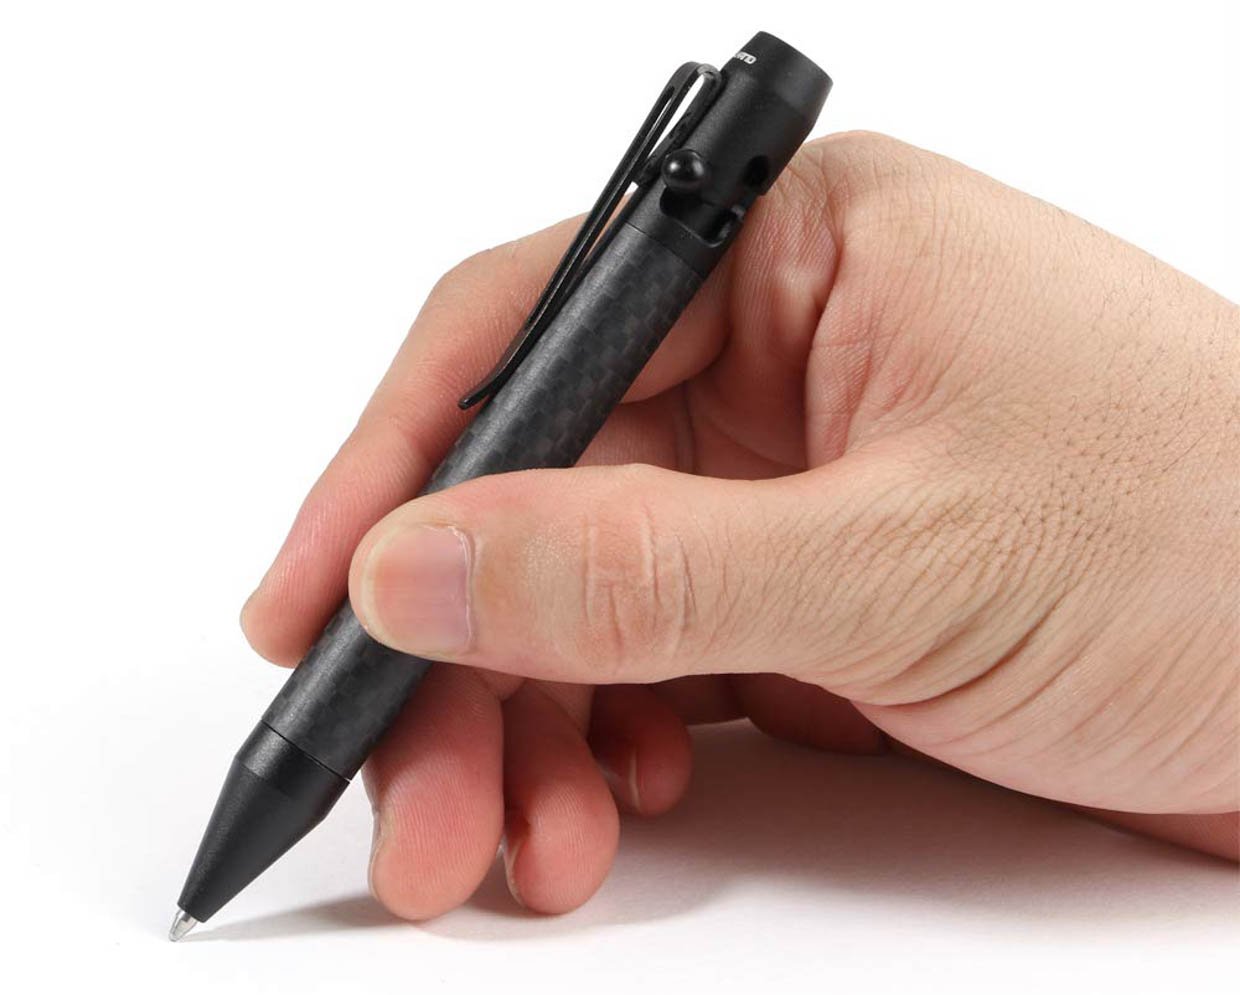 Cool Hand Carbon Fiber Pen